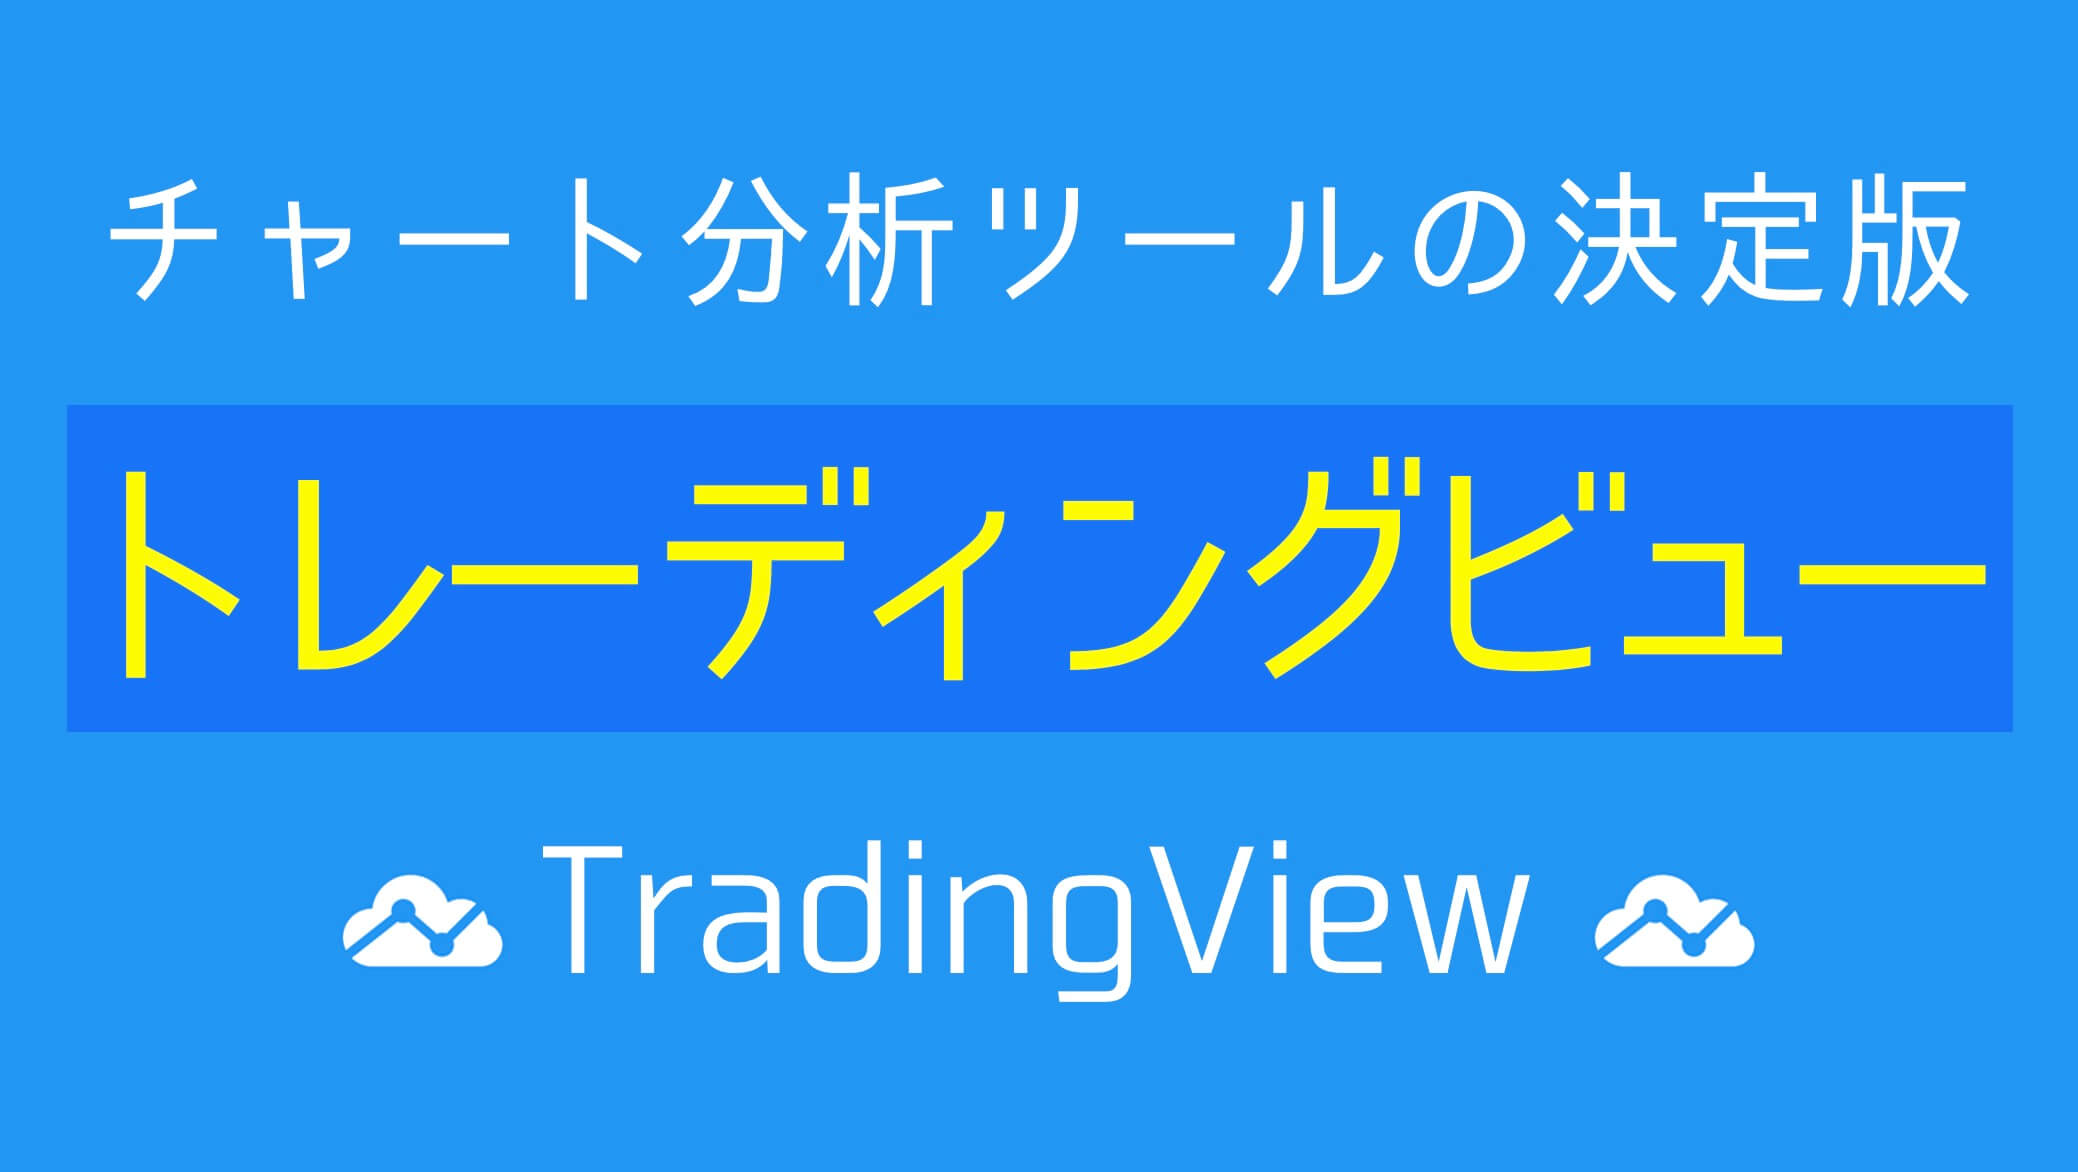 トレーディングビュー Tradingview とは 口コミ 評判 おすすめの有料プランを解説 すべての投資家達へ